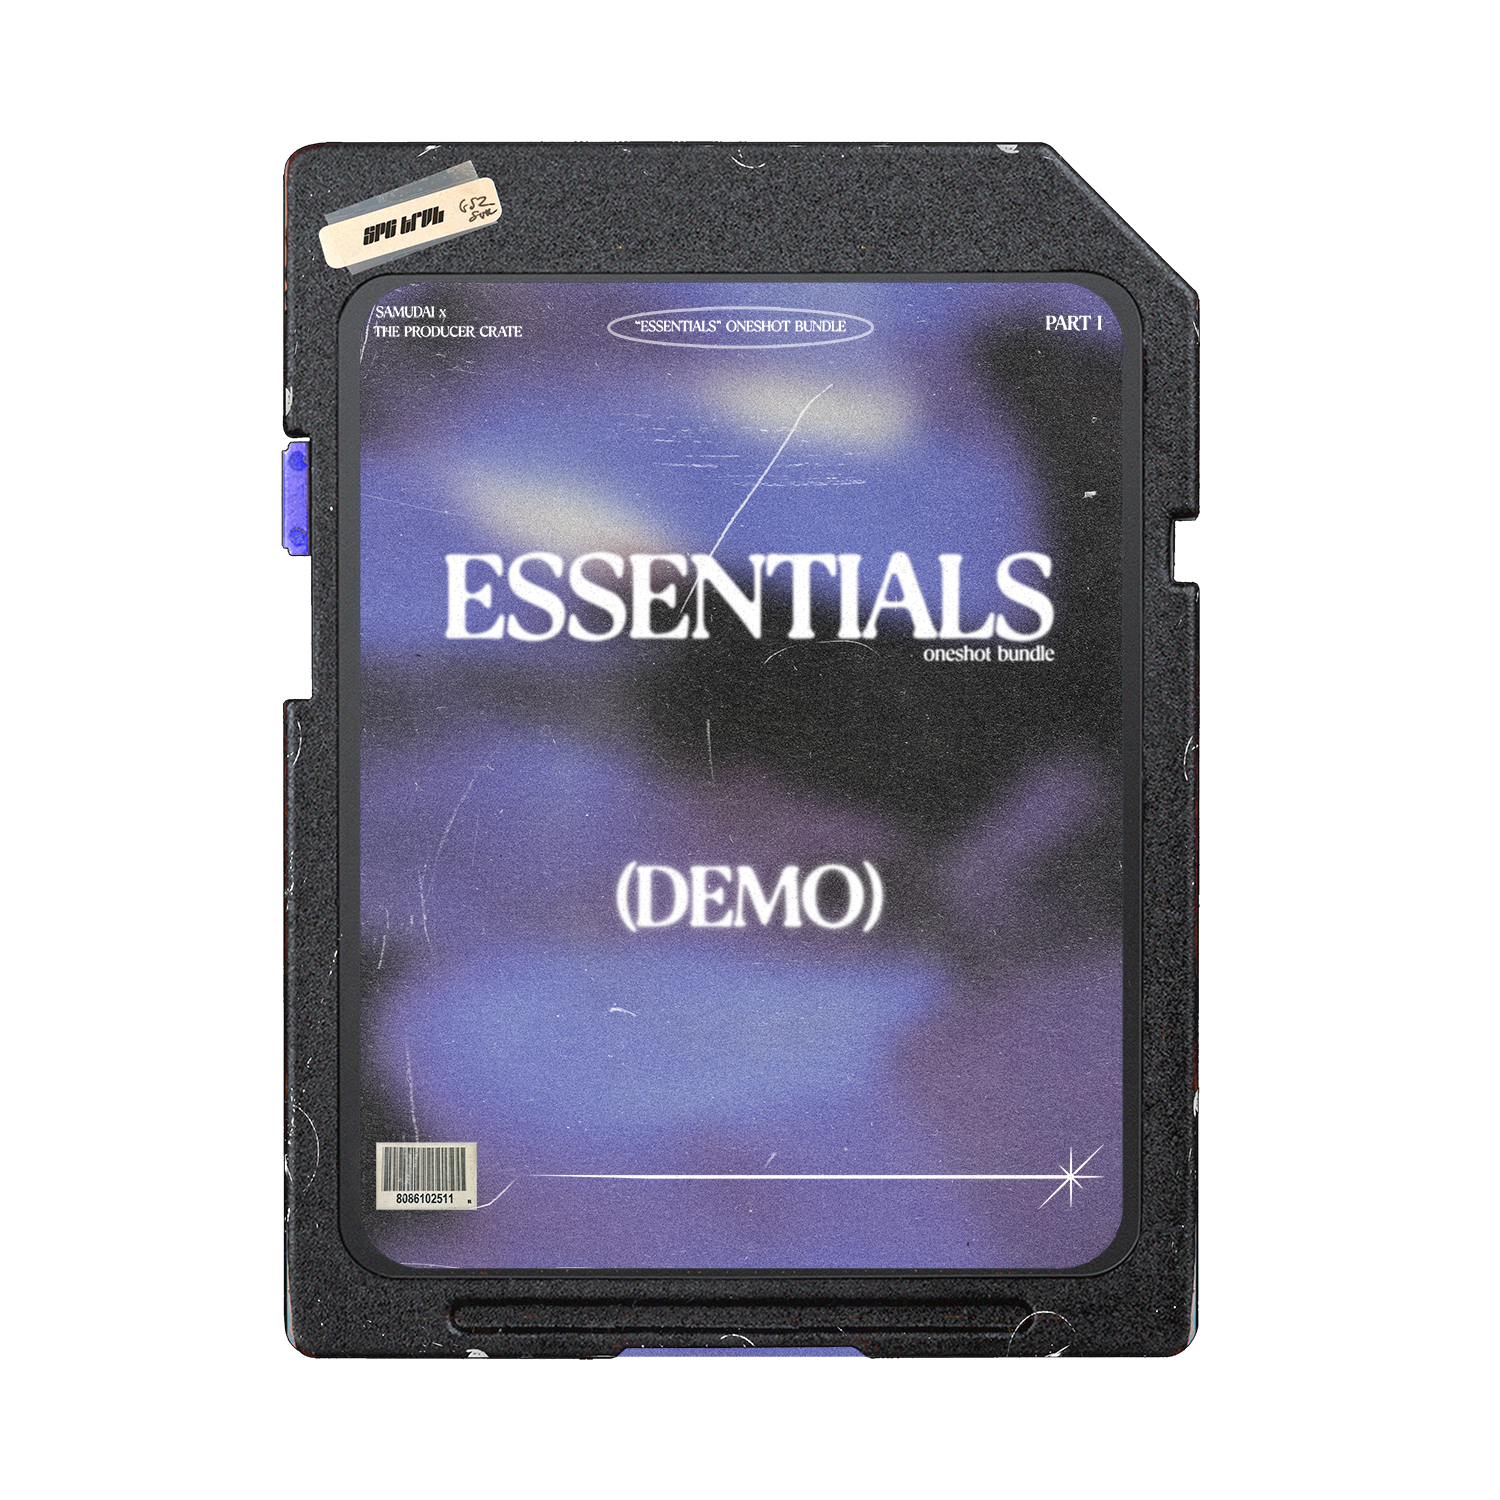 [FREE] Essentials - Oneshot Bundle Demo